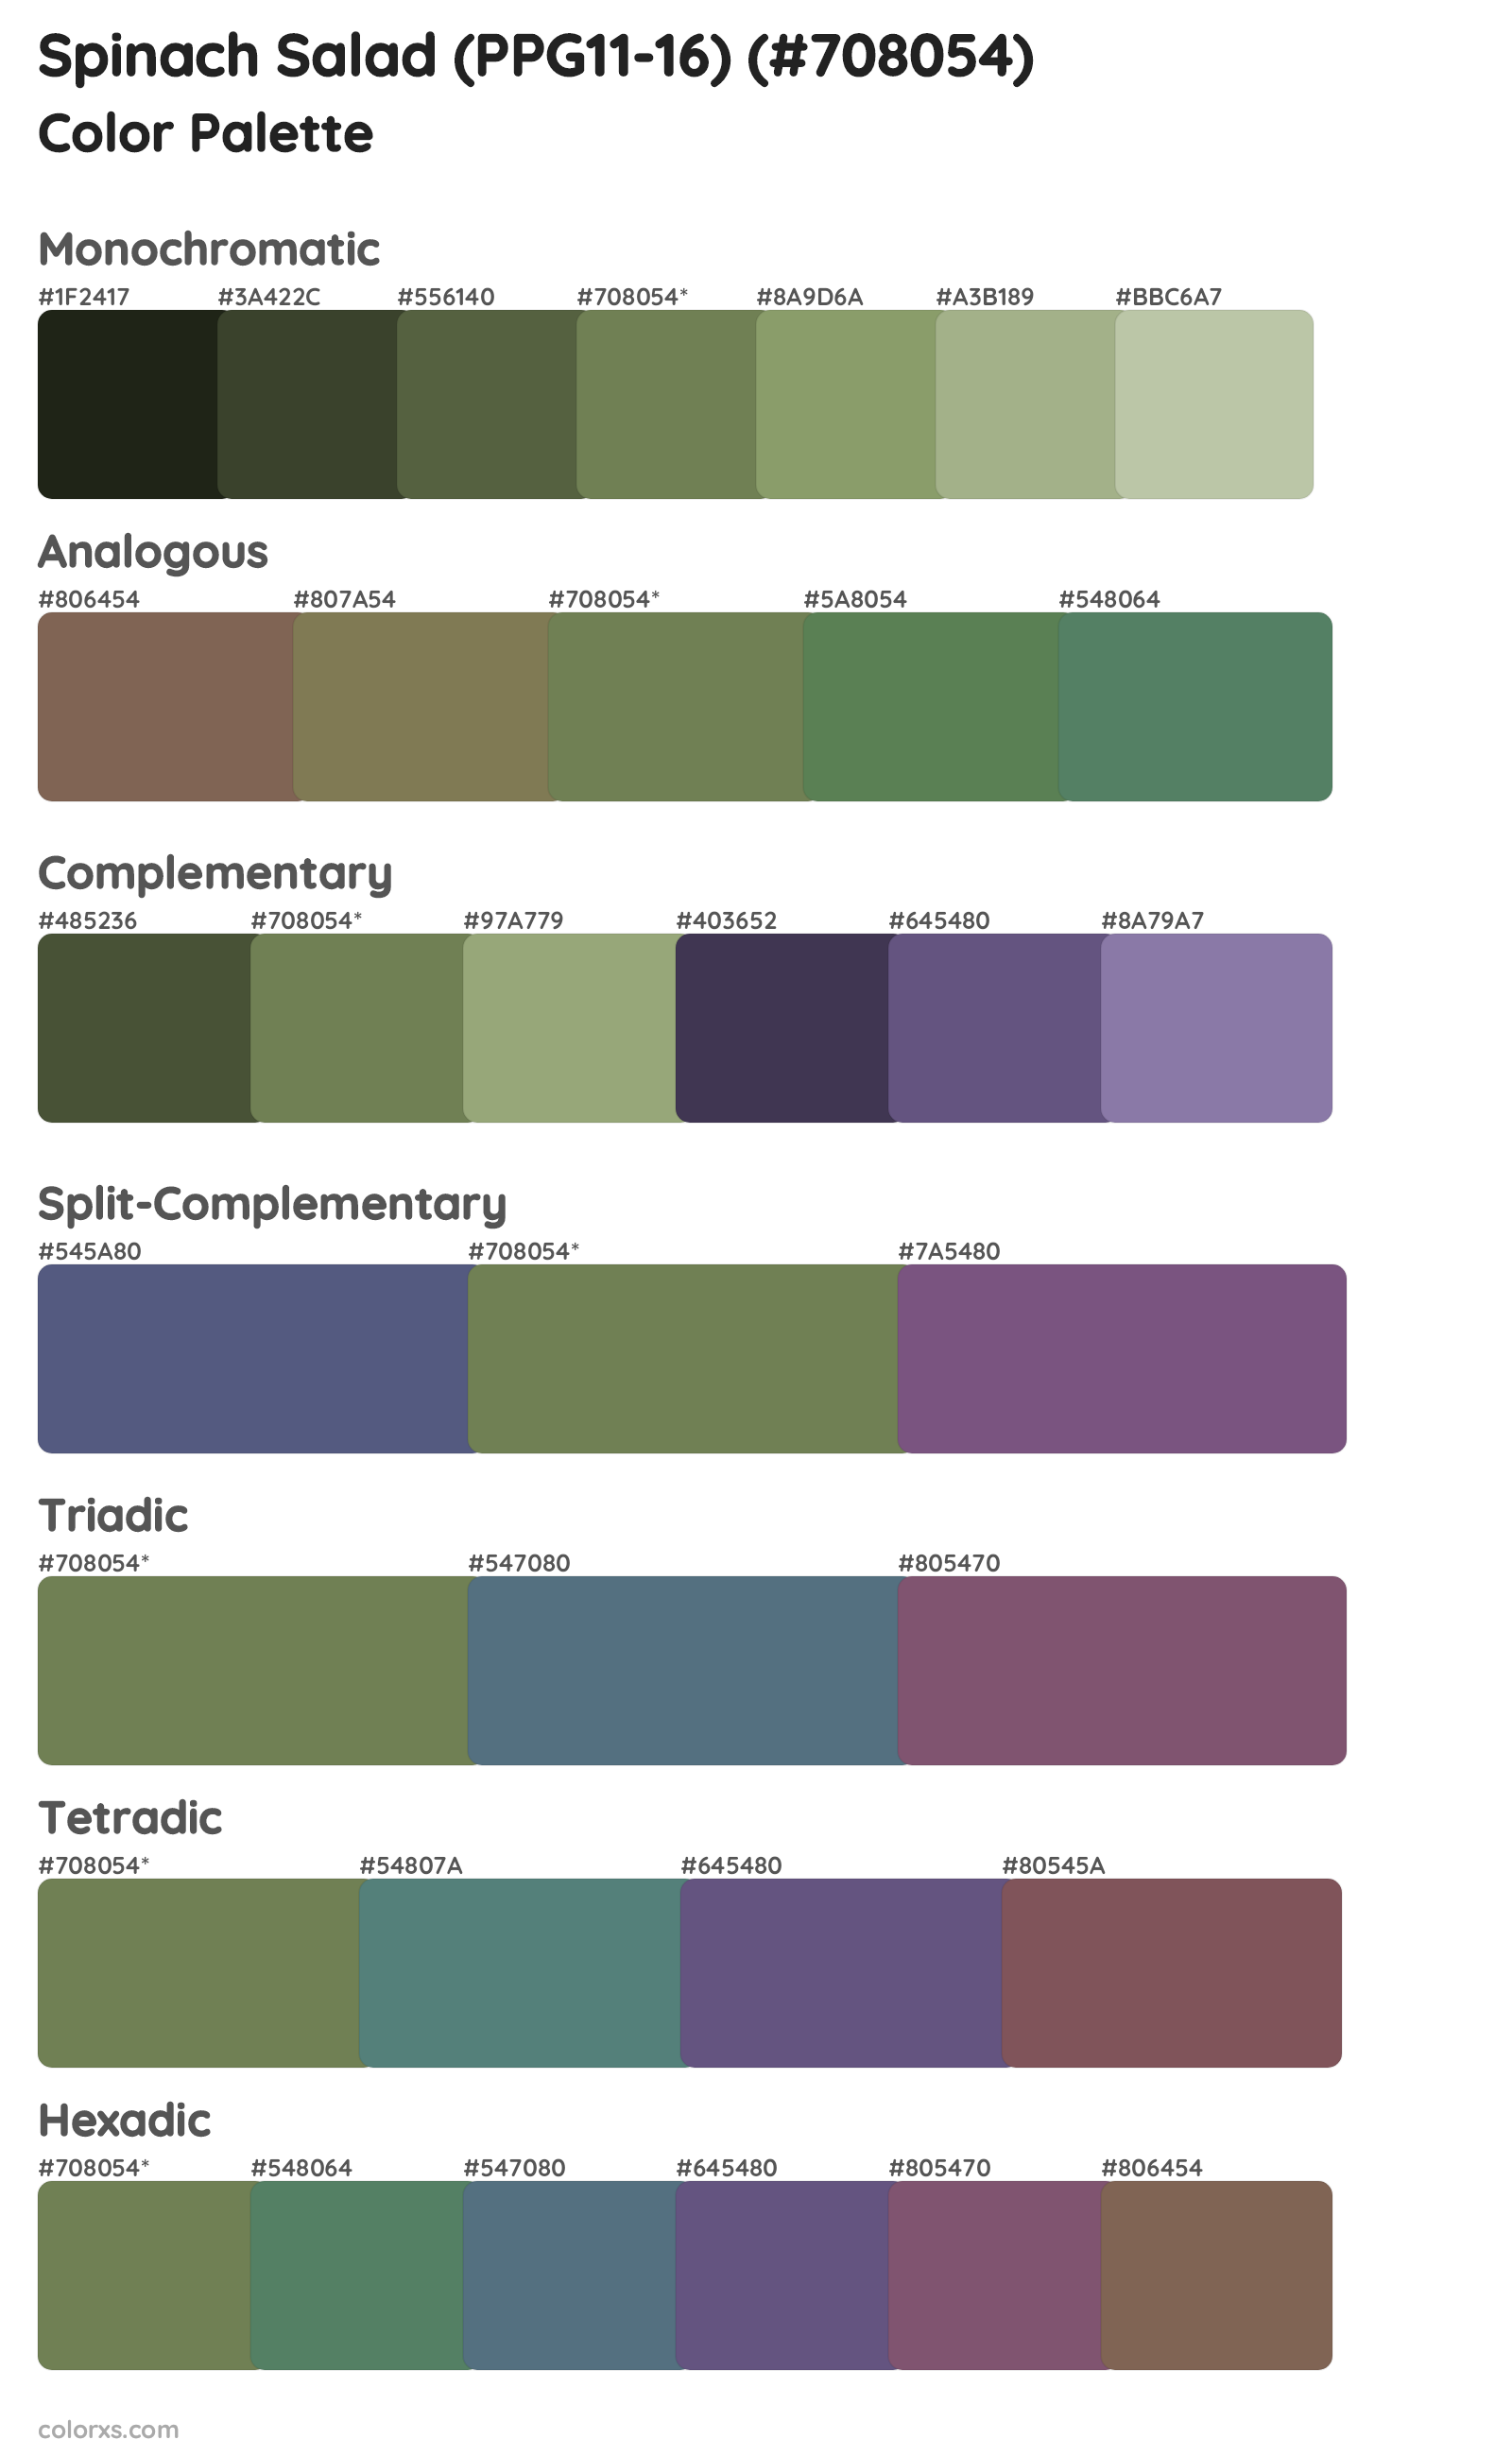 Spinach Salad (PPG11-16) Color Scheme Palettes